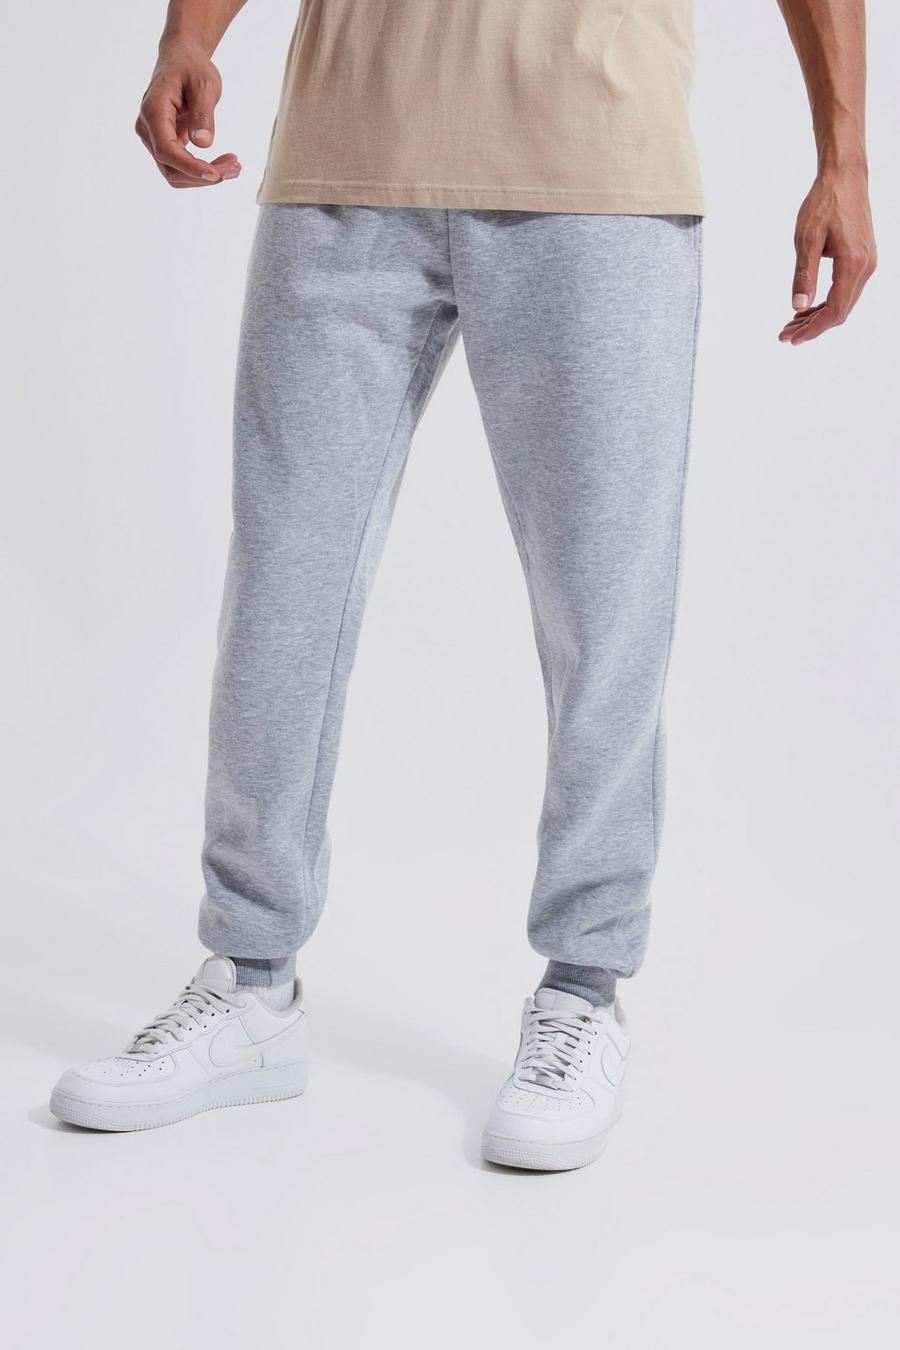 סלע אפור grigio מכנסי טרנינג בייסיק בגזרה רגילה, לגברים גבוהים